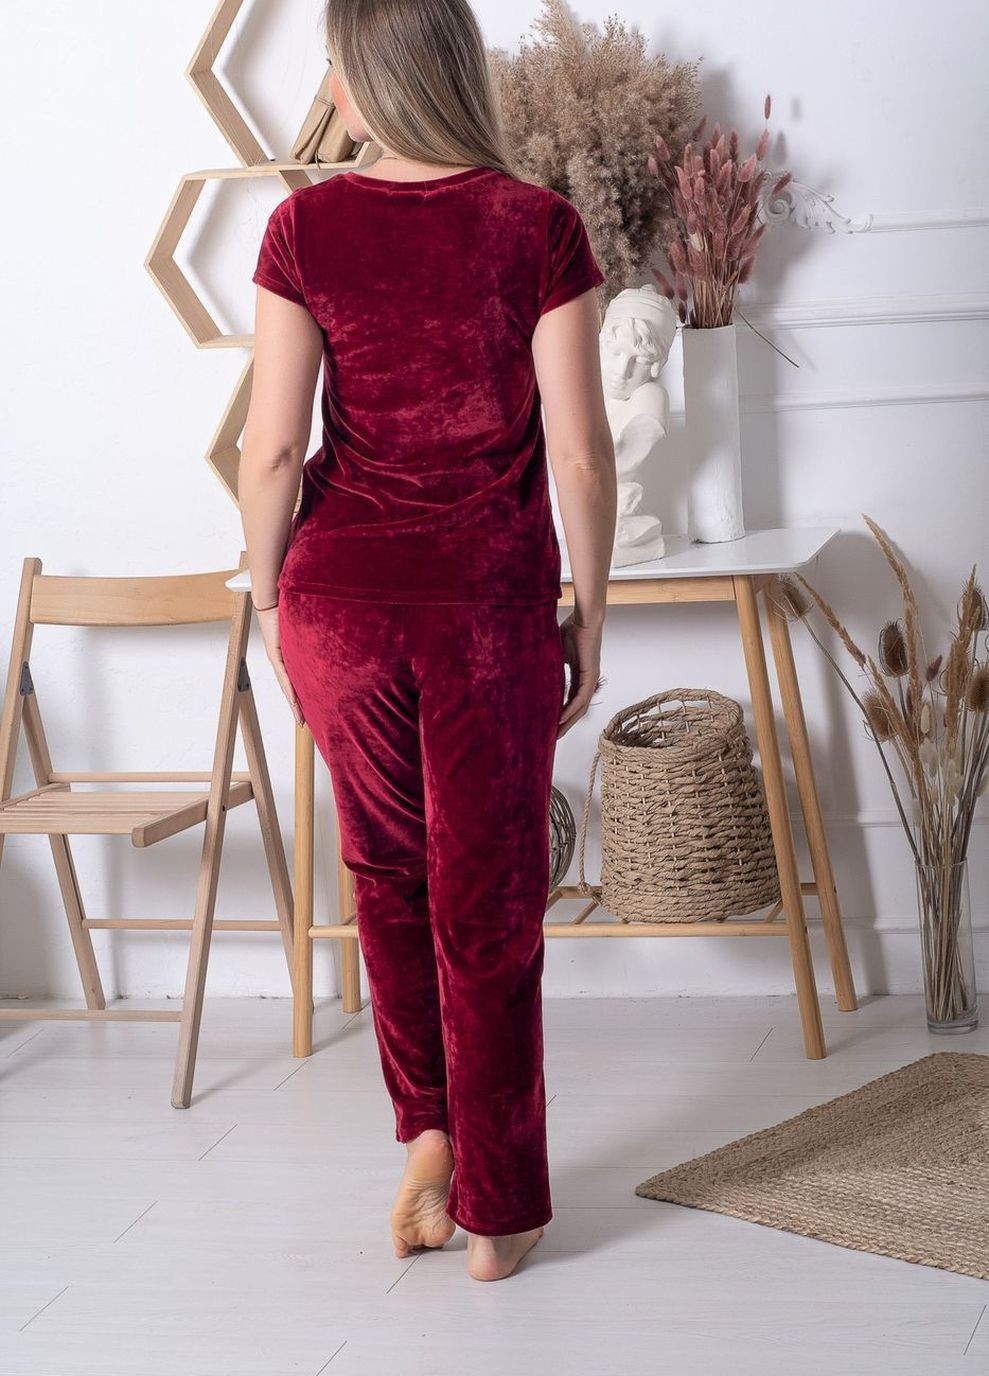 Темно-красная всесезон женская пижама из плюш-велюра xxl+ п1311 марсала MiaNaGreen